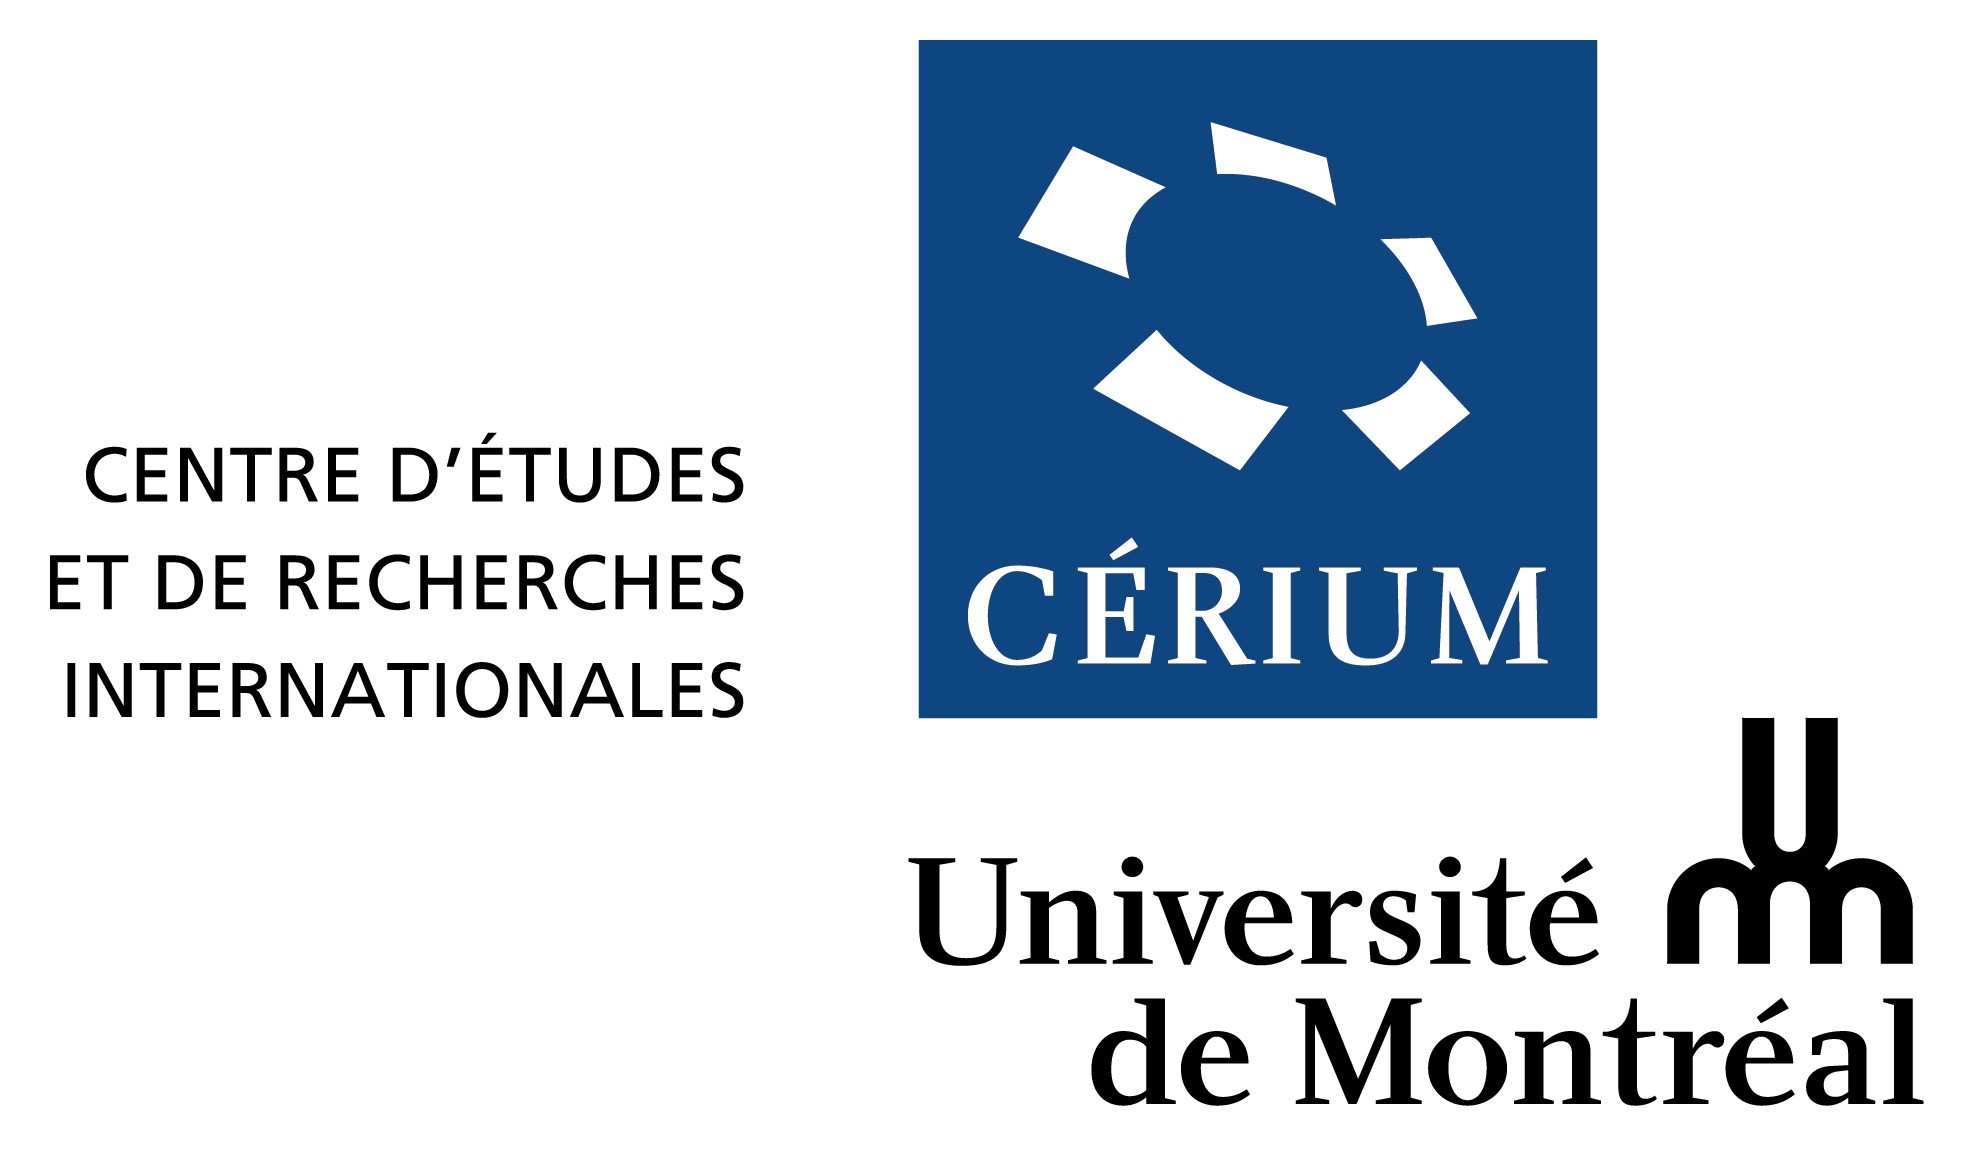 Centre d'études et de recherches internationales de l'université de Montréal